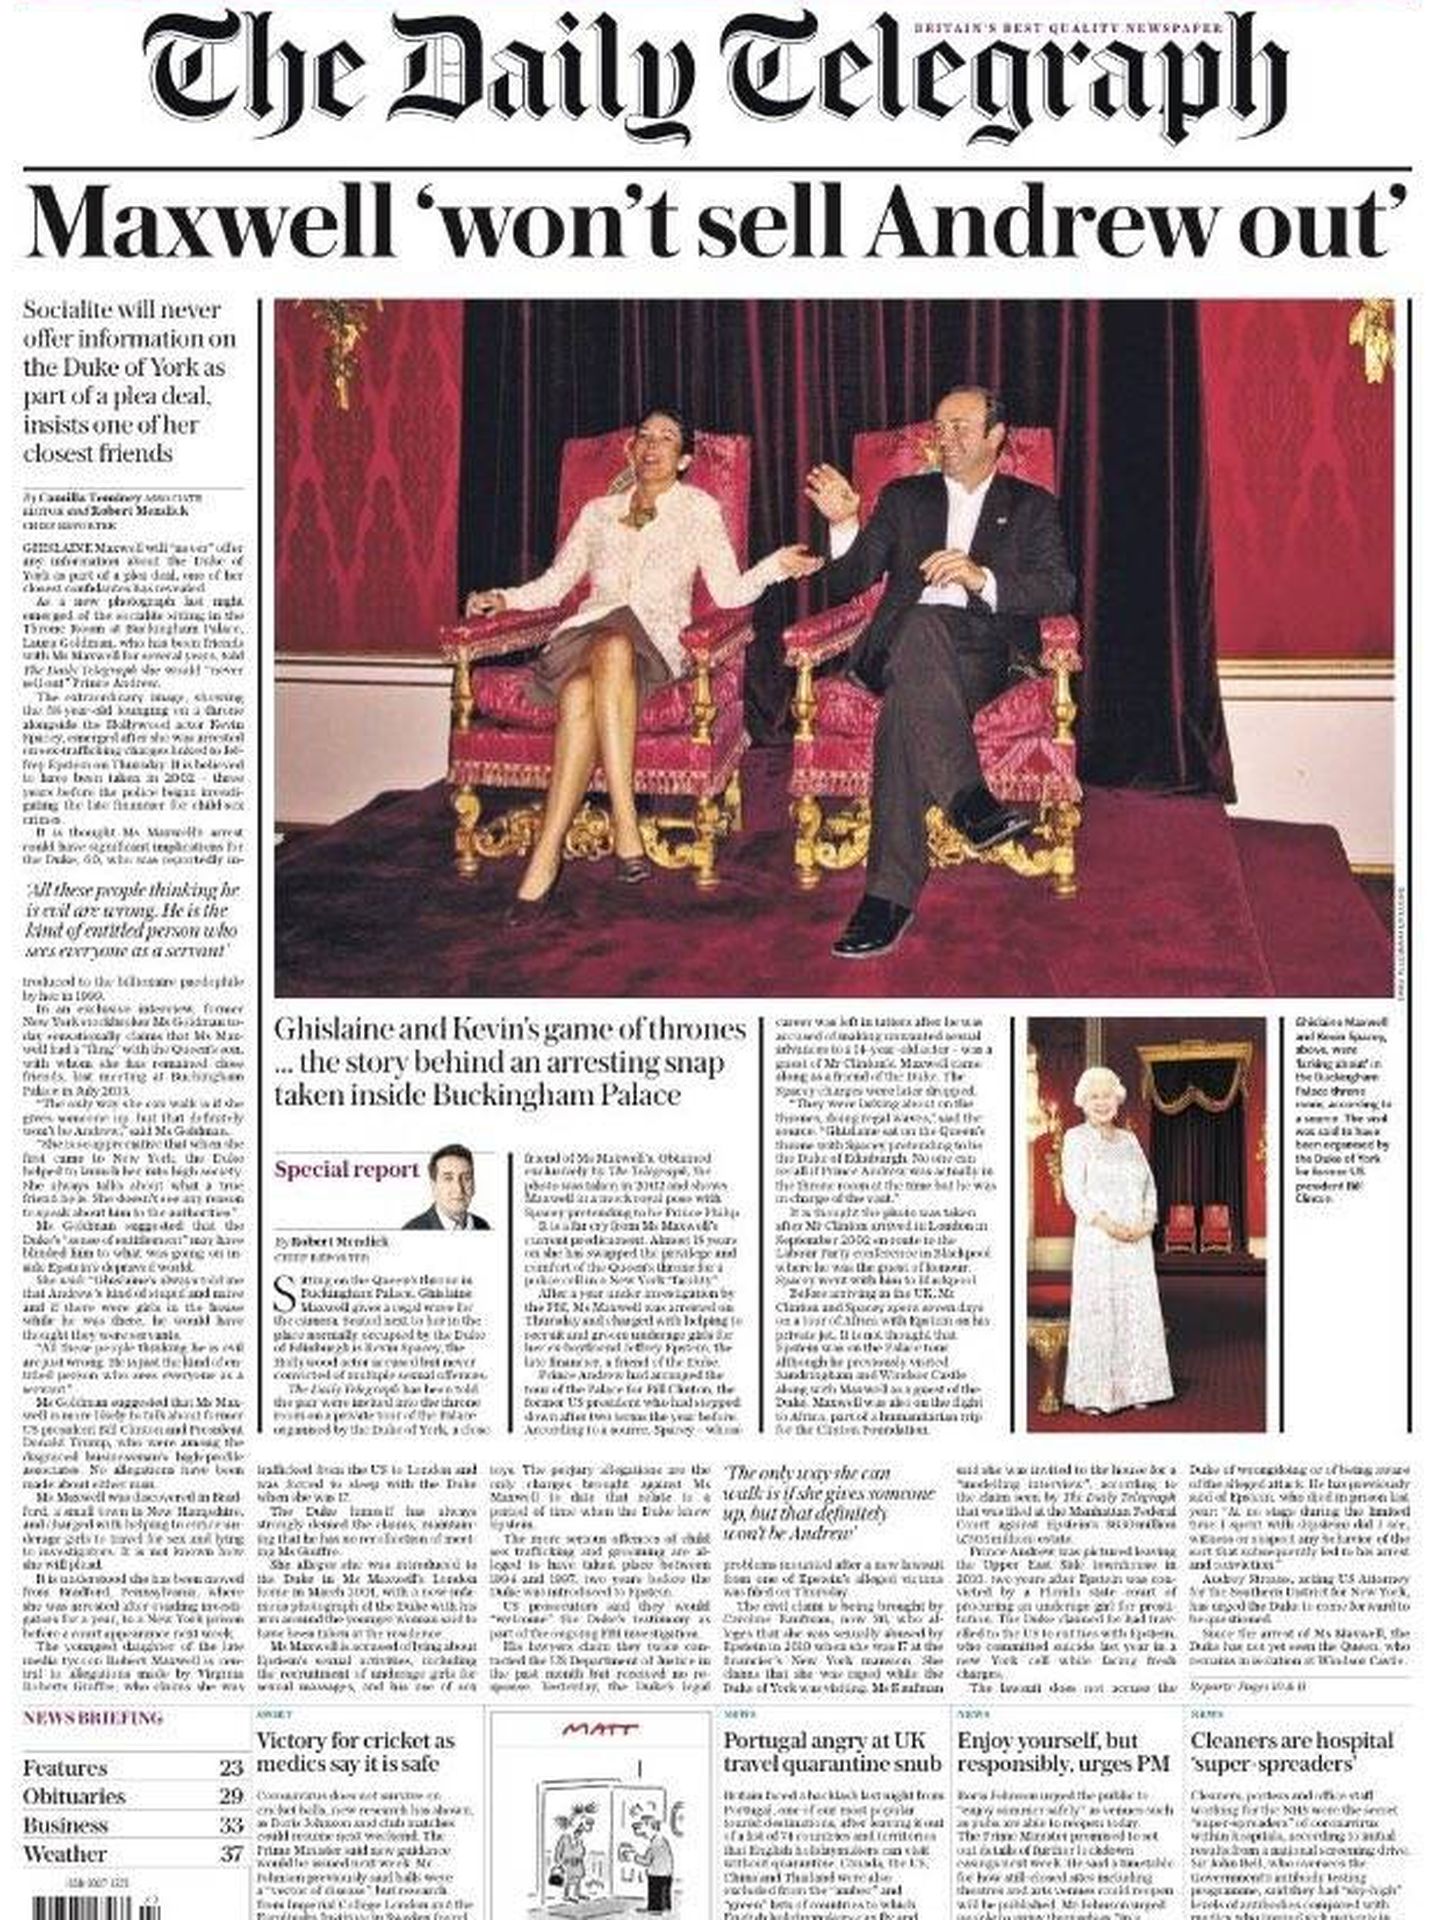 La portada de The Daily Telegraph con la fotografía de Maxwell y Spacey en Buckingham Palace.